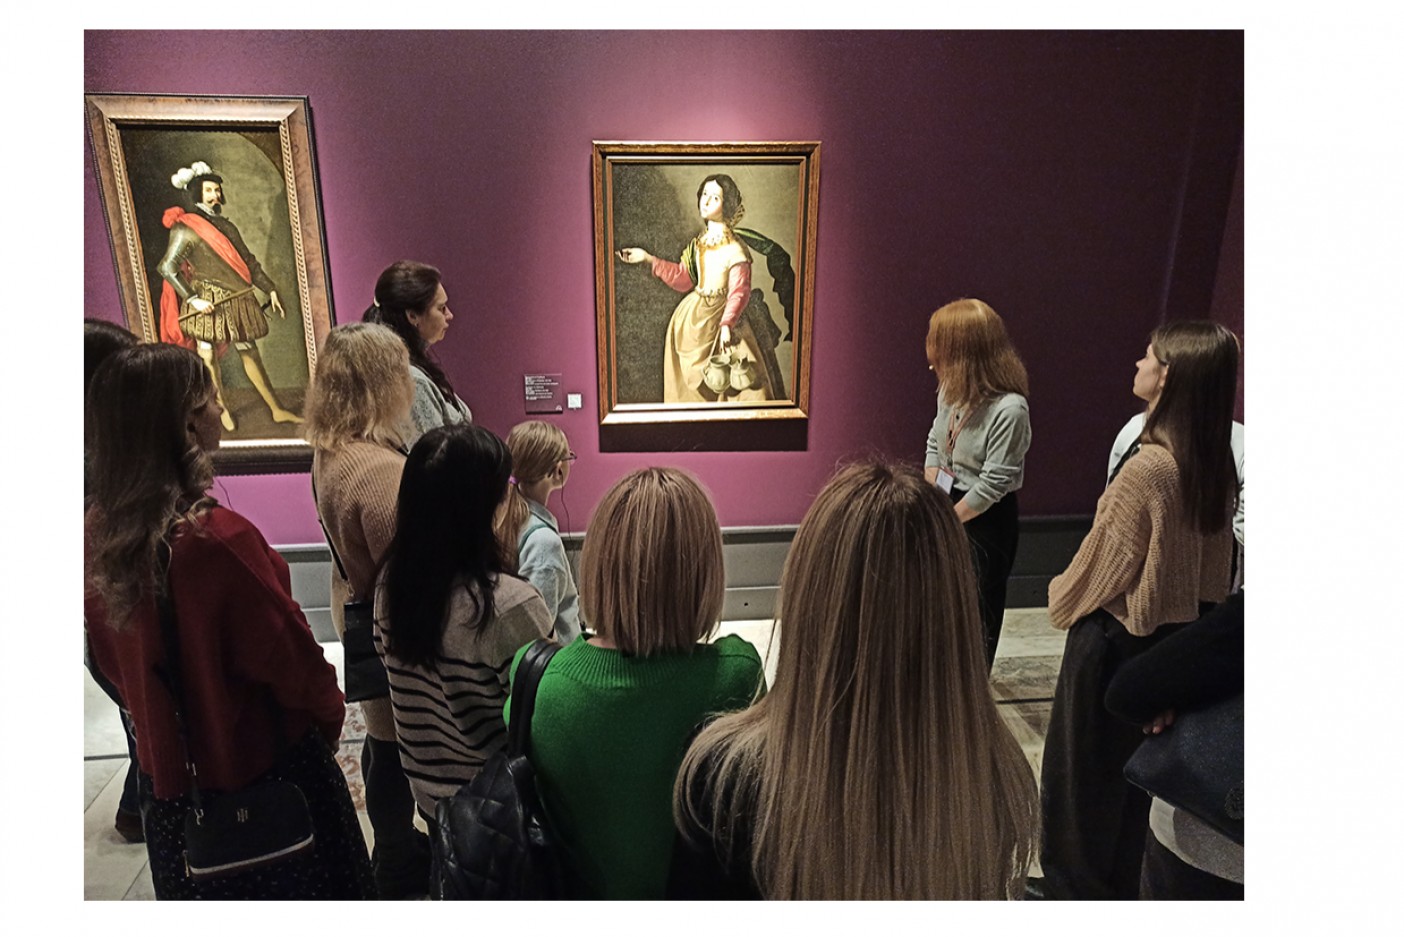 Картина из Смоленского музея-заповедника представлена на выставке в Государственном музее изобразительных искусств имени А. С. Пушкина